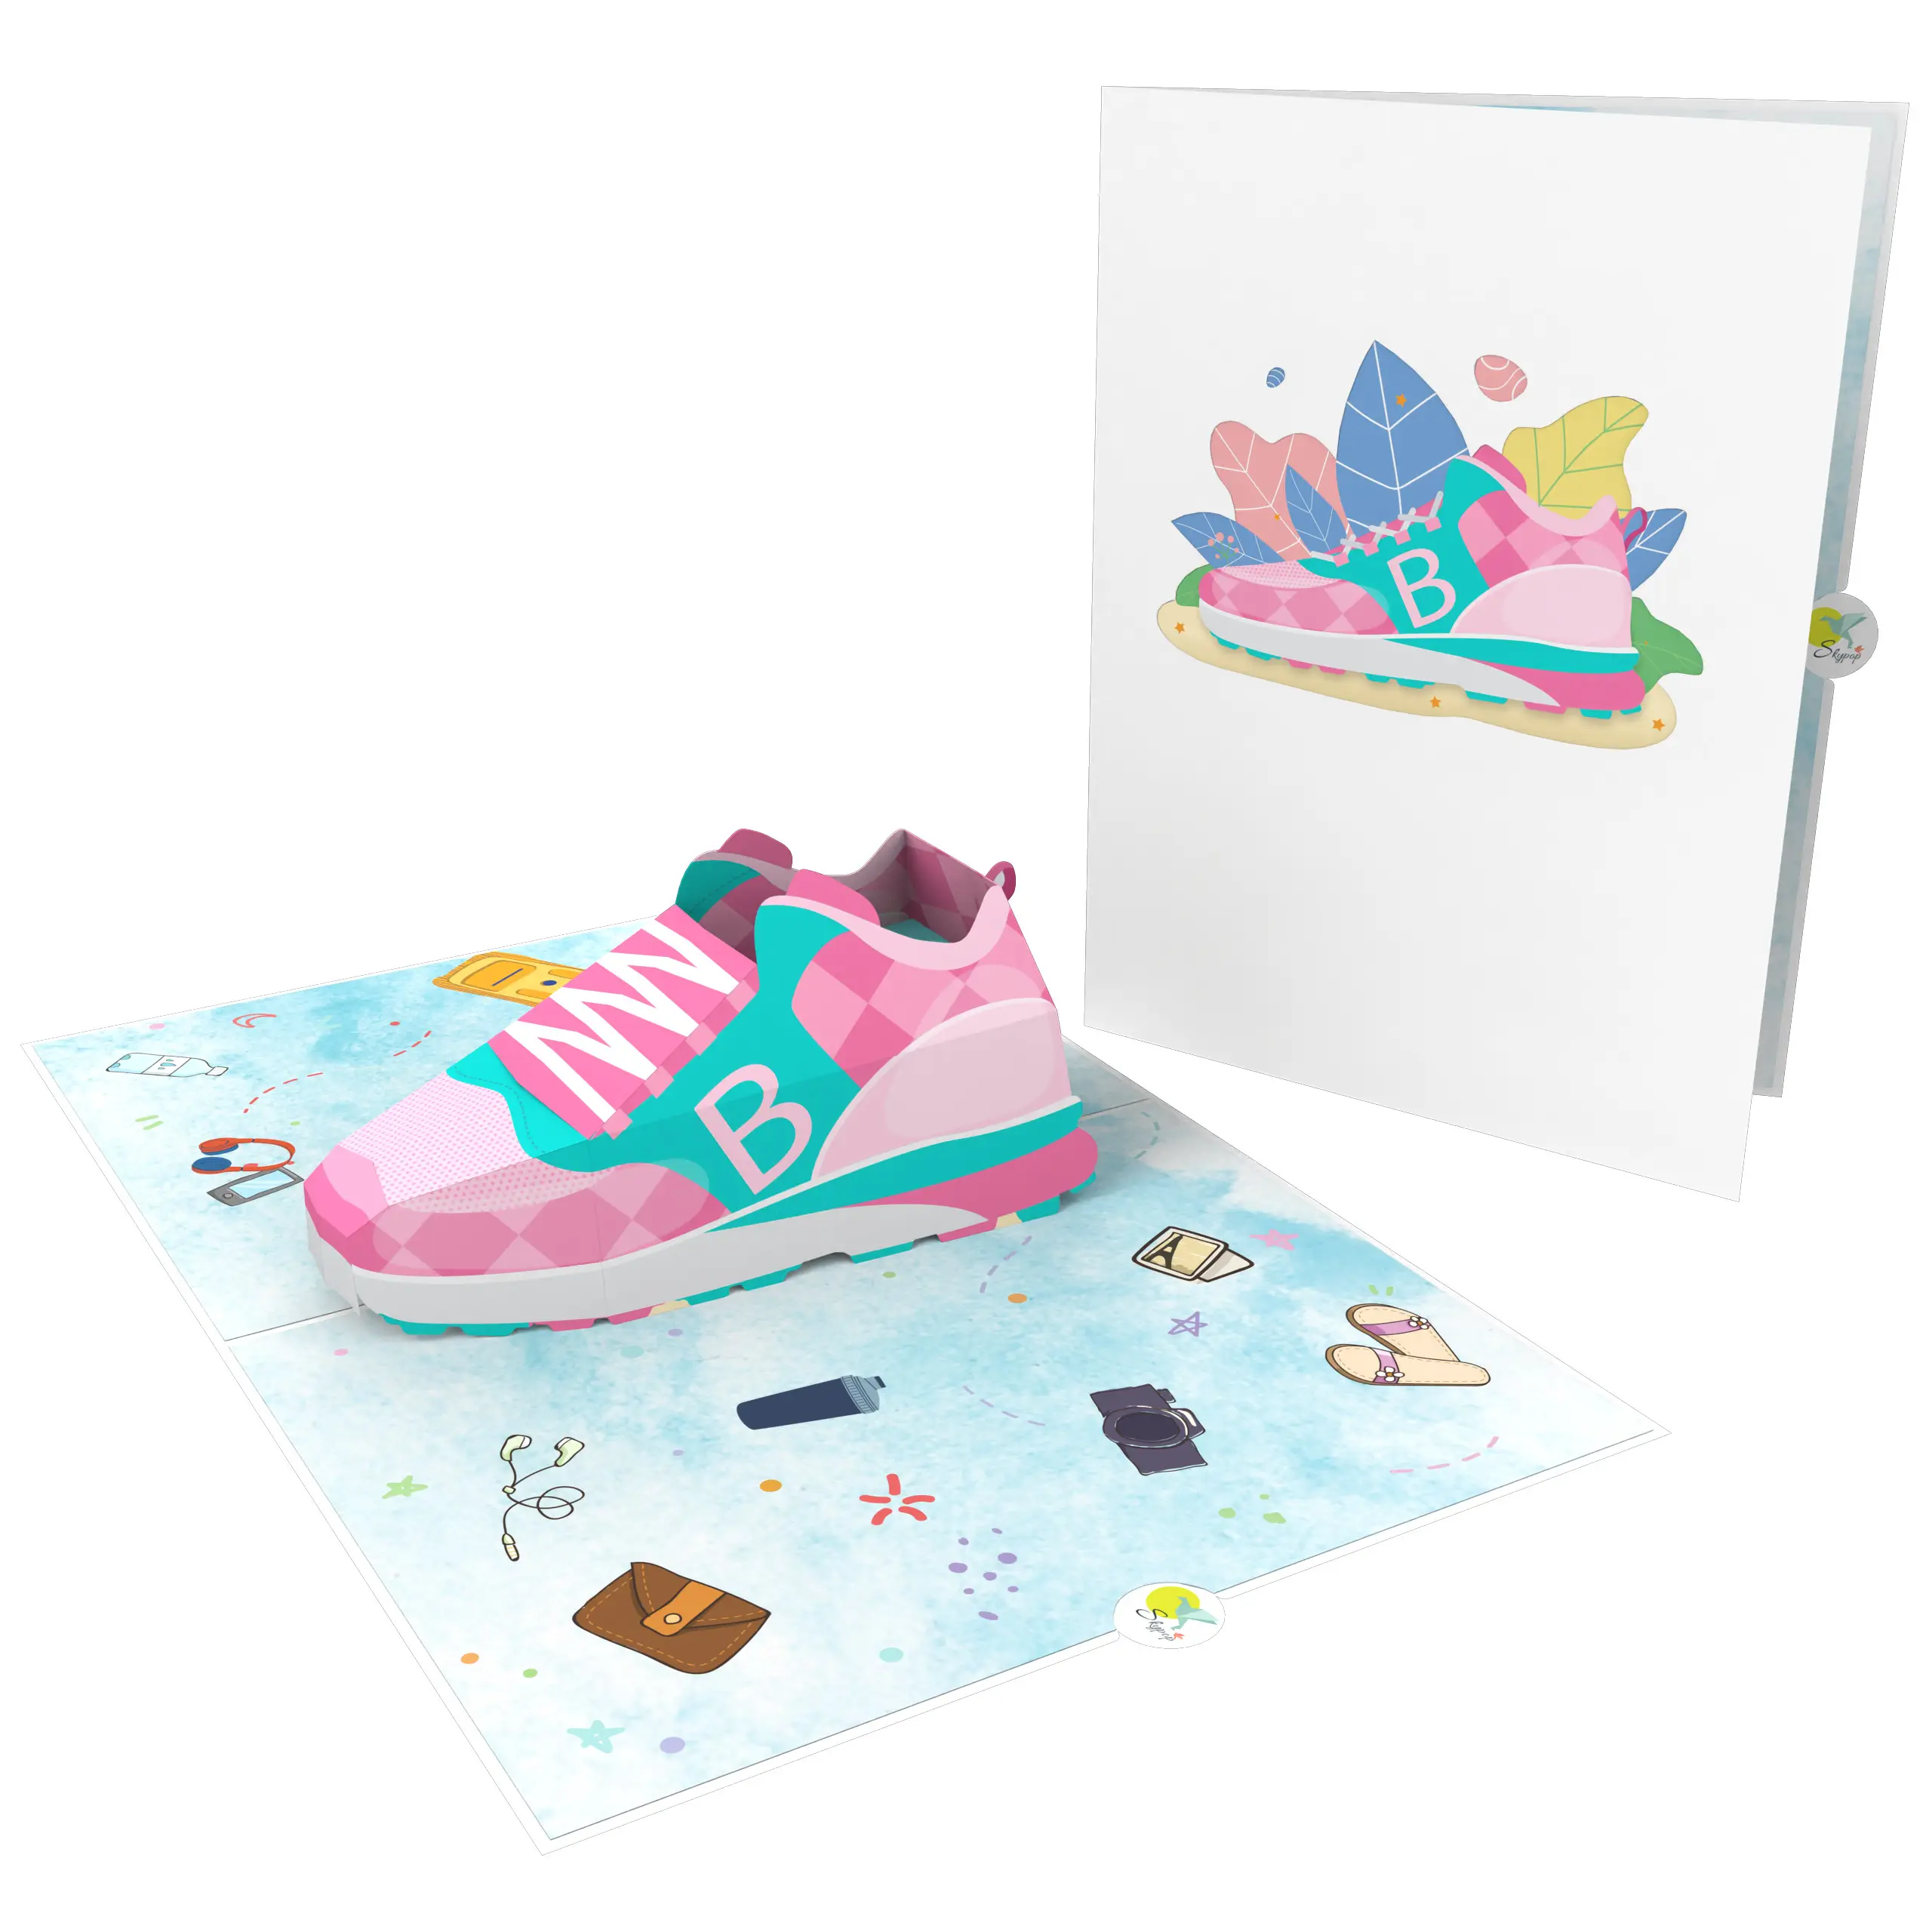 حذاء بناتي بطاقة ثلاثية الأبعاد مفتوحة الأكثر مبيعًا لأعياد ميلاد الطفل وحديث الولادة بطاقة ثلاثية الأبعاد مصنوعة يدويًا من الورق